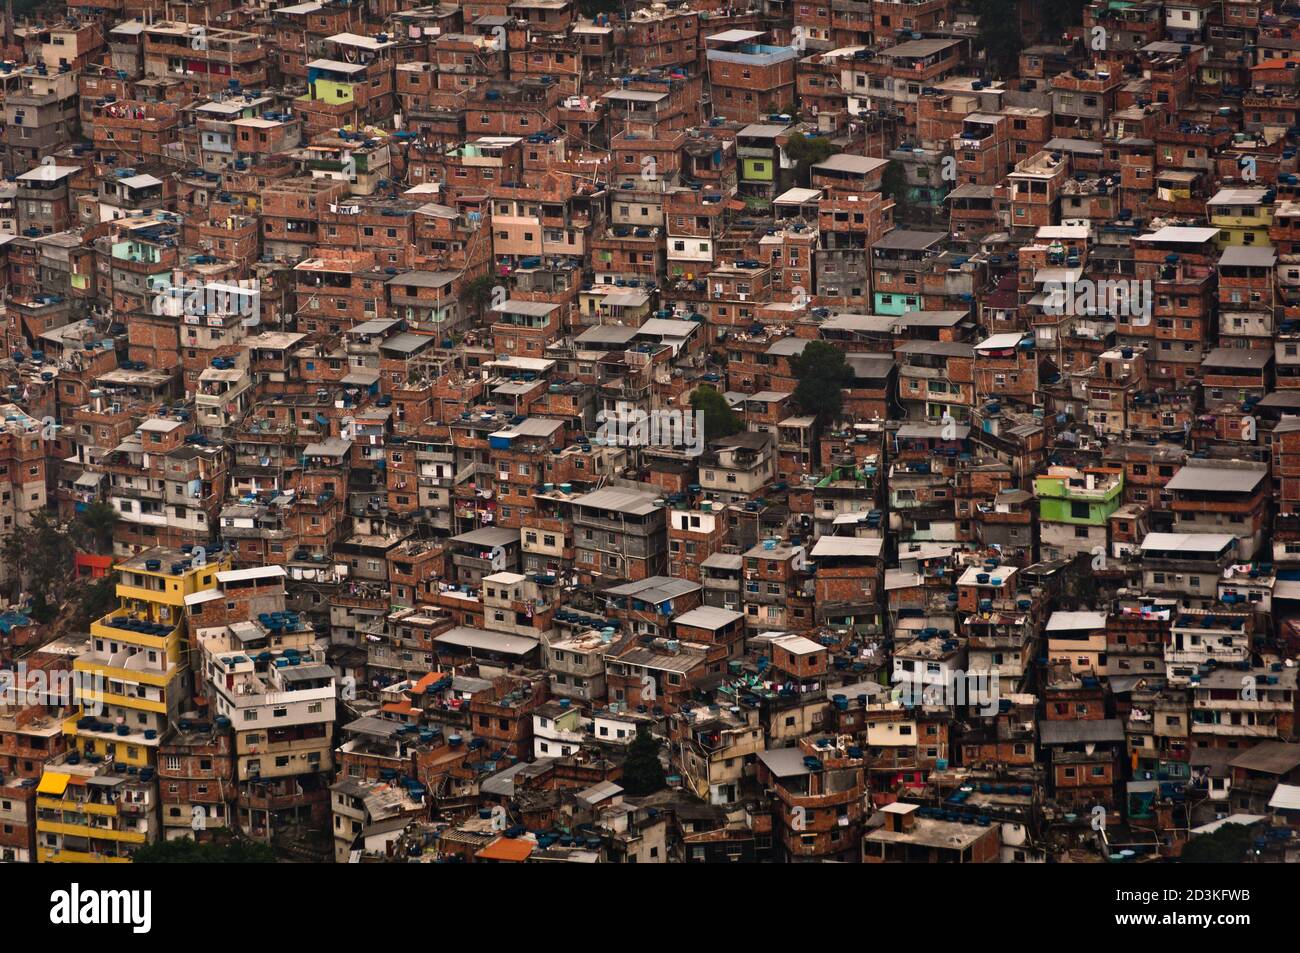 Favela da Rocinha, der größte Slum (Shanty Town) in Lateinamerika. Das Hotel liegt in Rio de Janeiro, Brasilien, hat es mehr als 70,000 Einwohner. Stockfoto